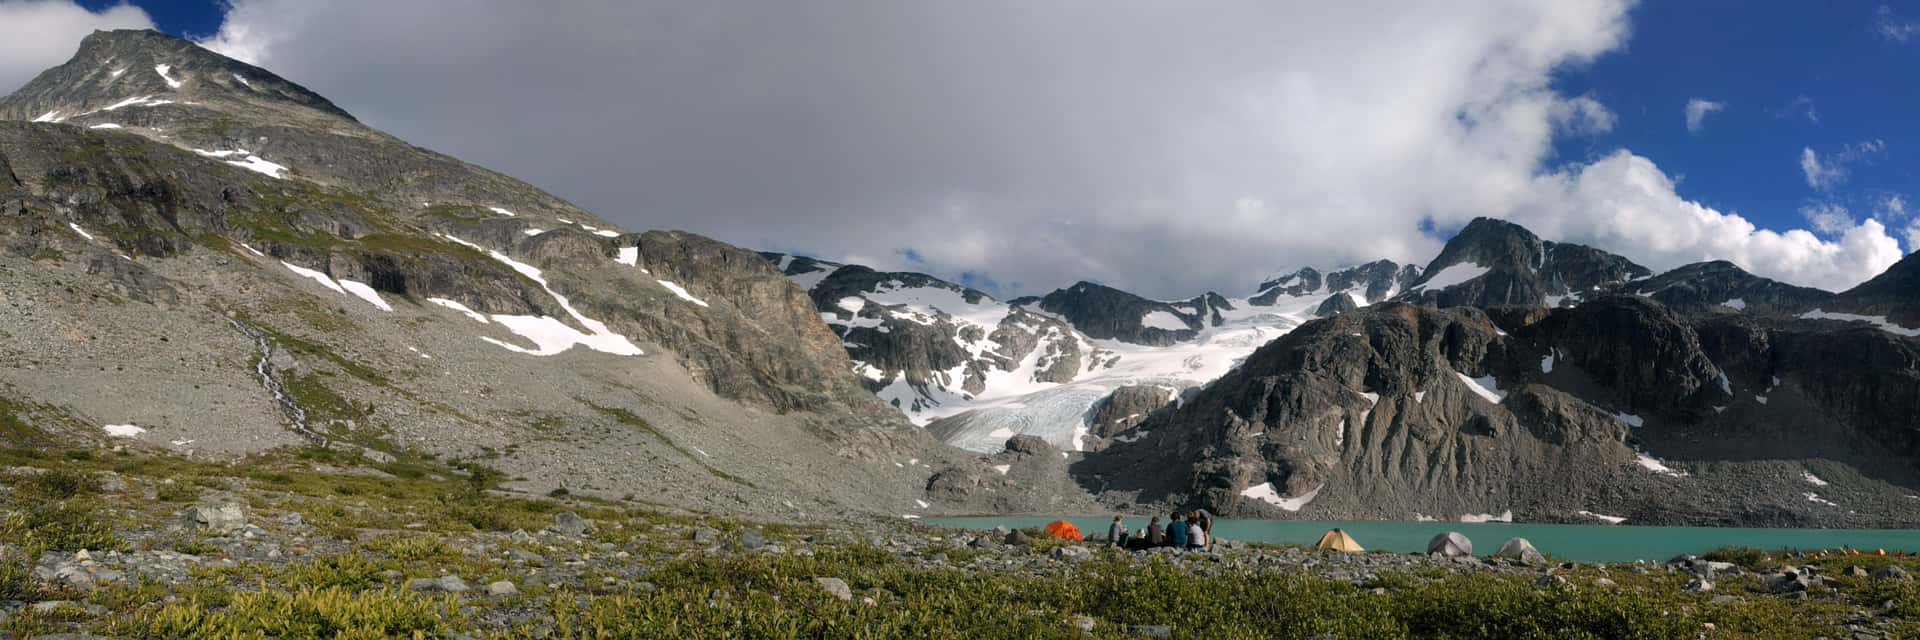 campsite at Wedgemount Lake